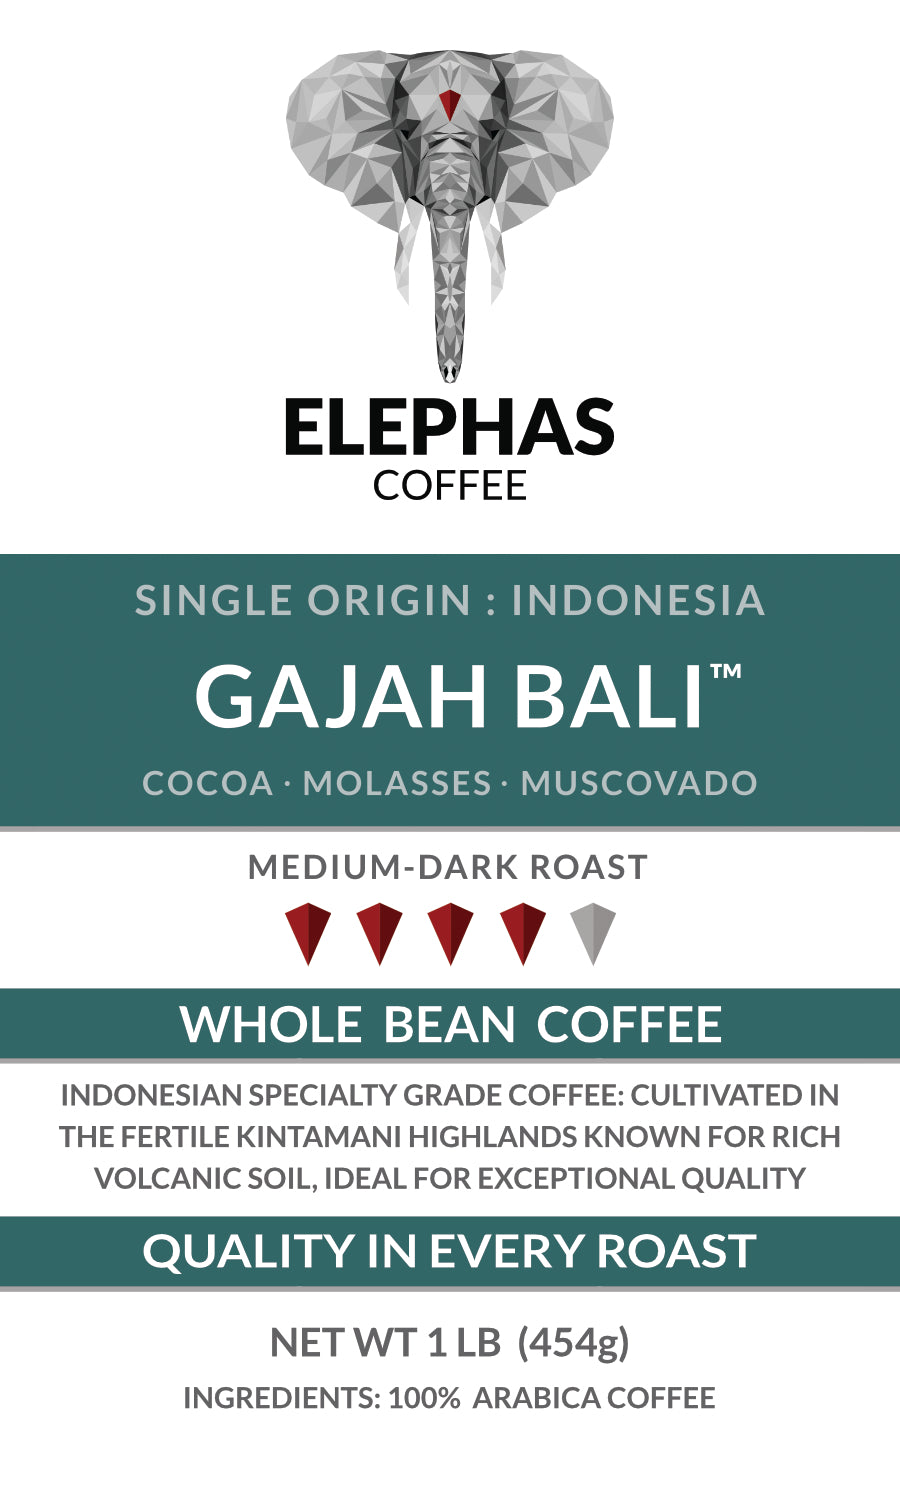 GAJAH BALI Indonesia Single Origin Coffee